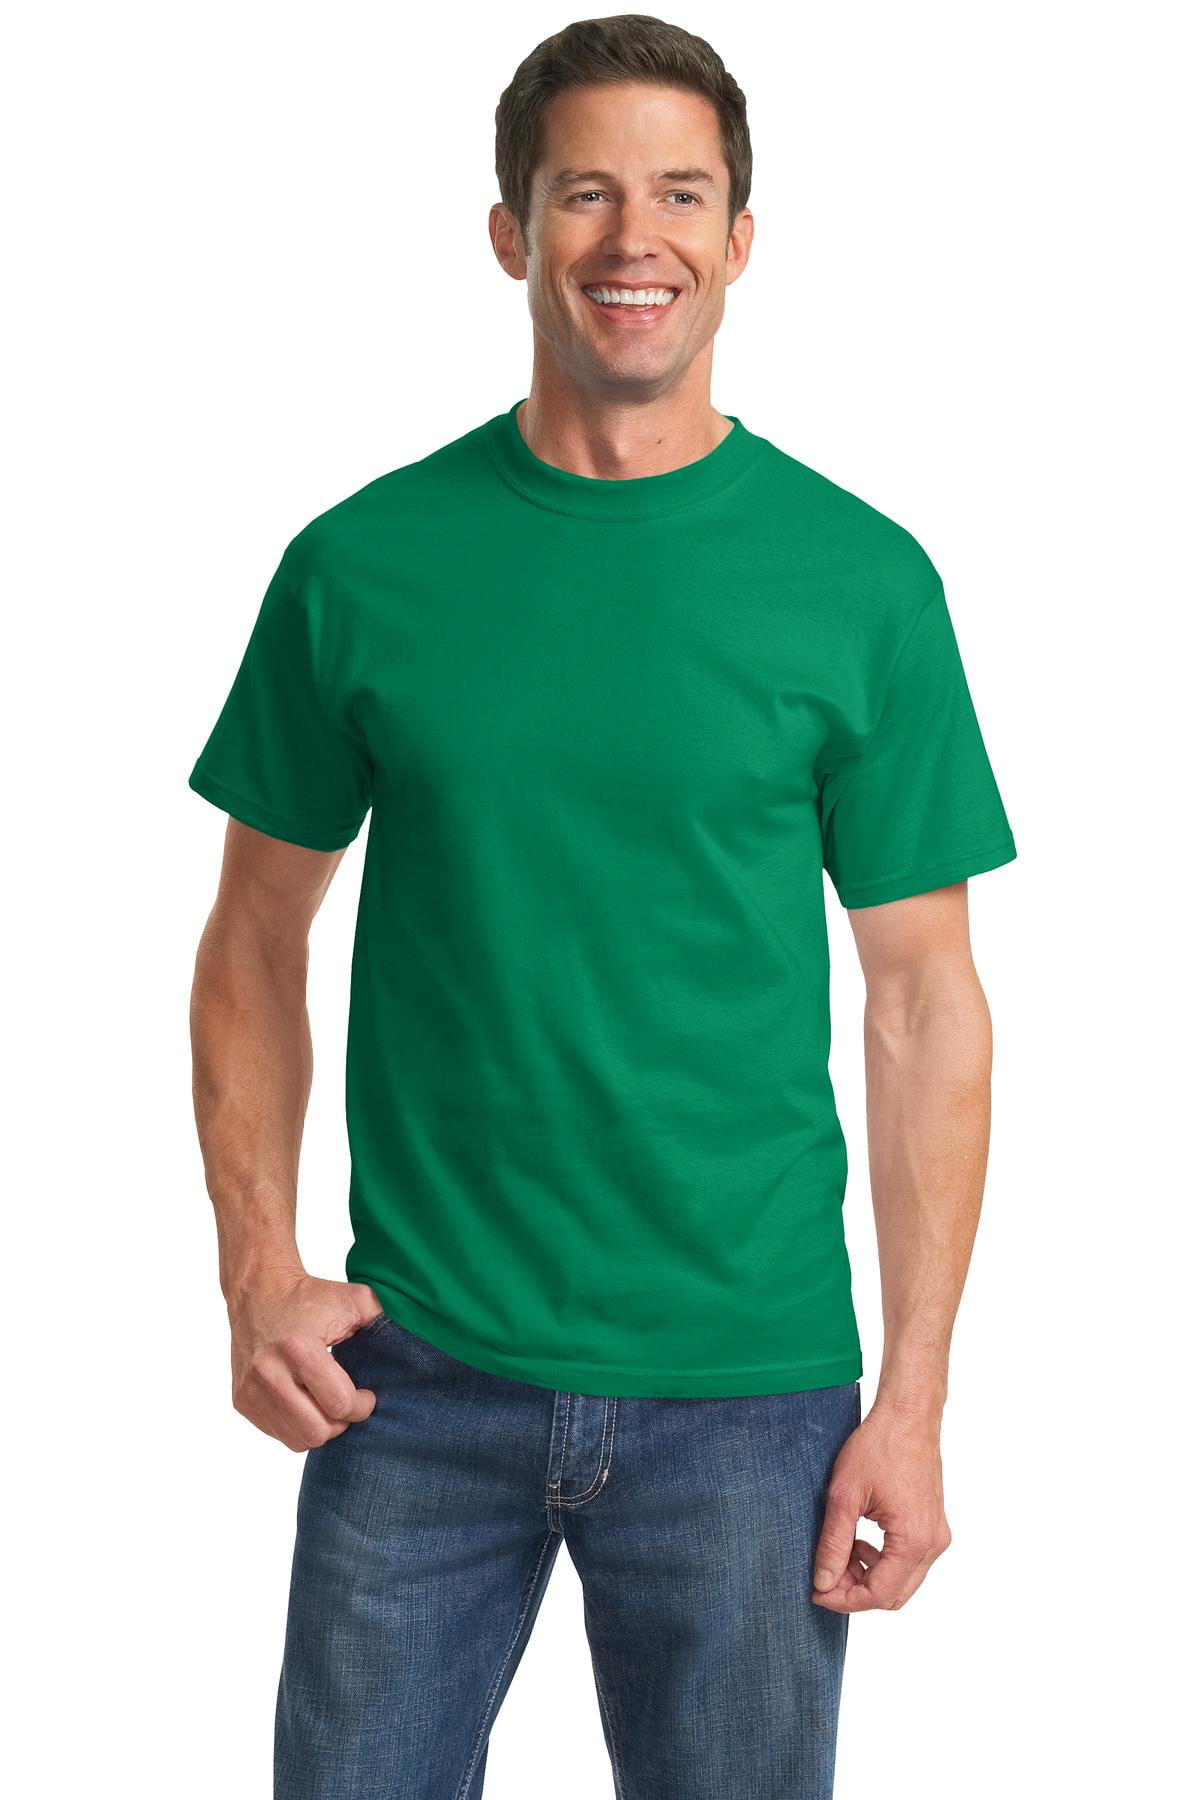 Essential T-Shirt for Sale mit Orange Sicherheitsweste